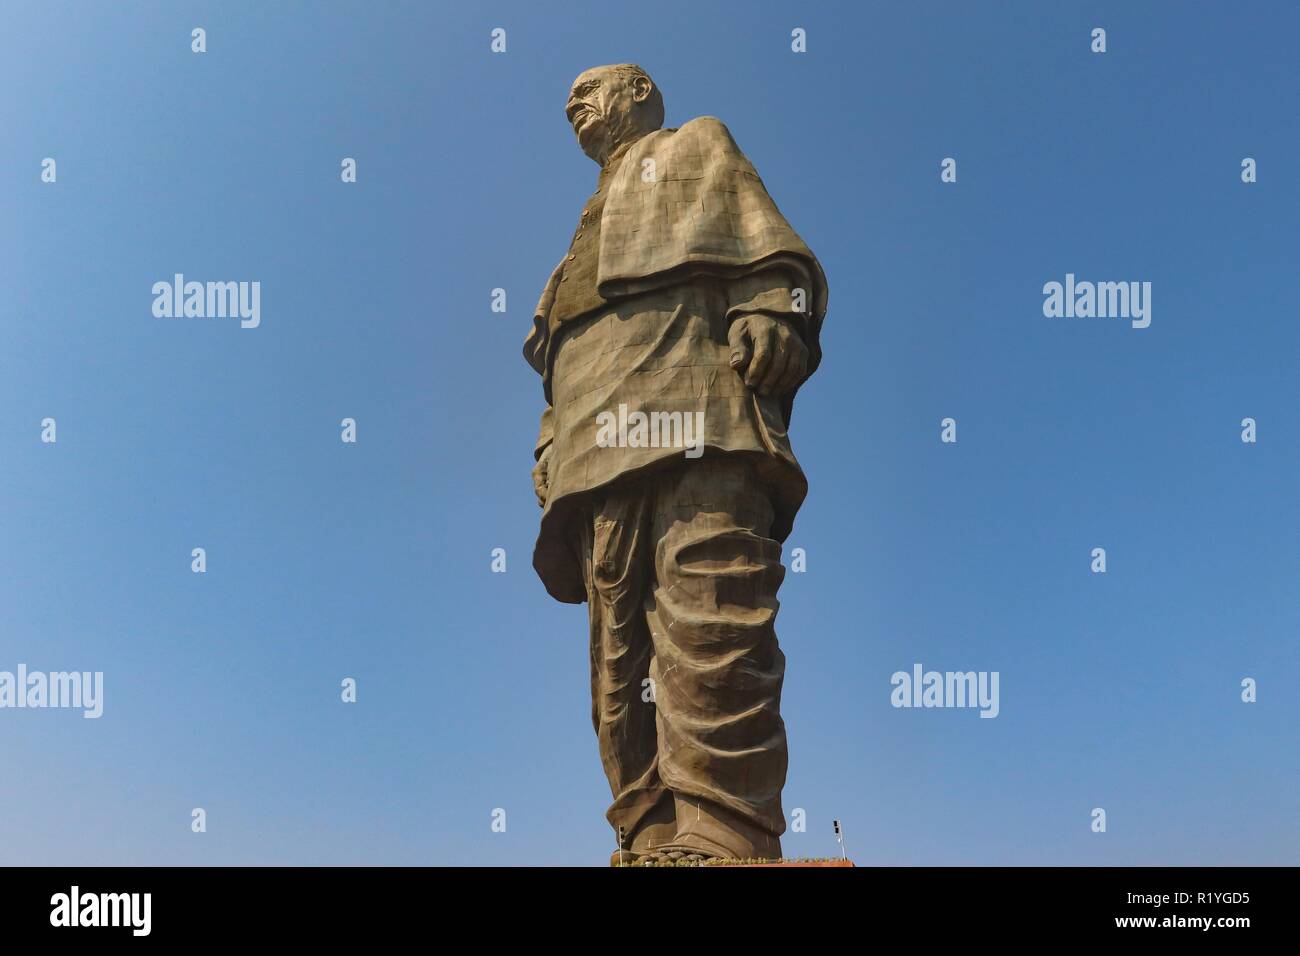 Le più alte del mondo statua, 'Statue di unità',ad una altezza di 182 metri dello Sri Sardar Vallabhai Patel si trova nei pressi di Vadodara,Gujarat/India Foto Stock